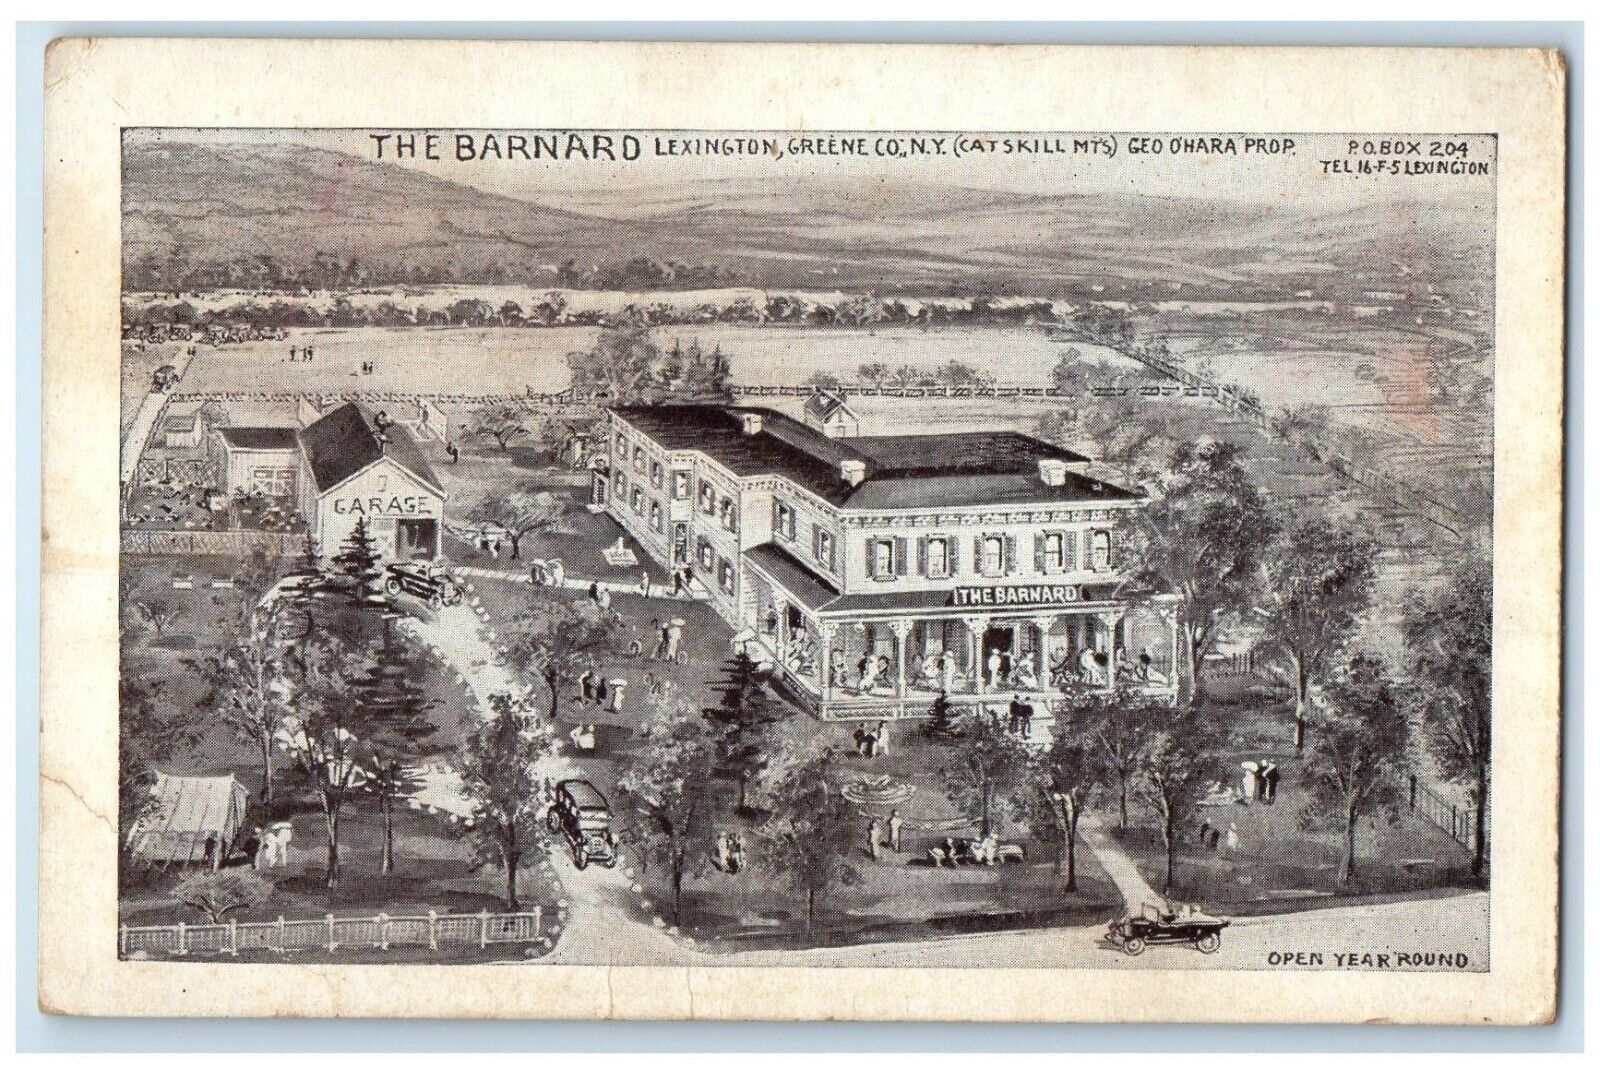 c1910's The Barnard Lexington Greene Co. NY Catskill Mts. Antique Postcard